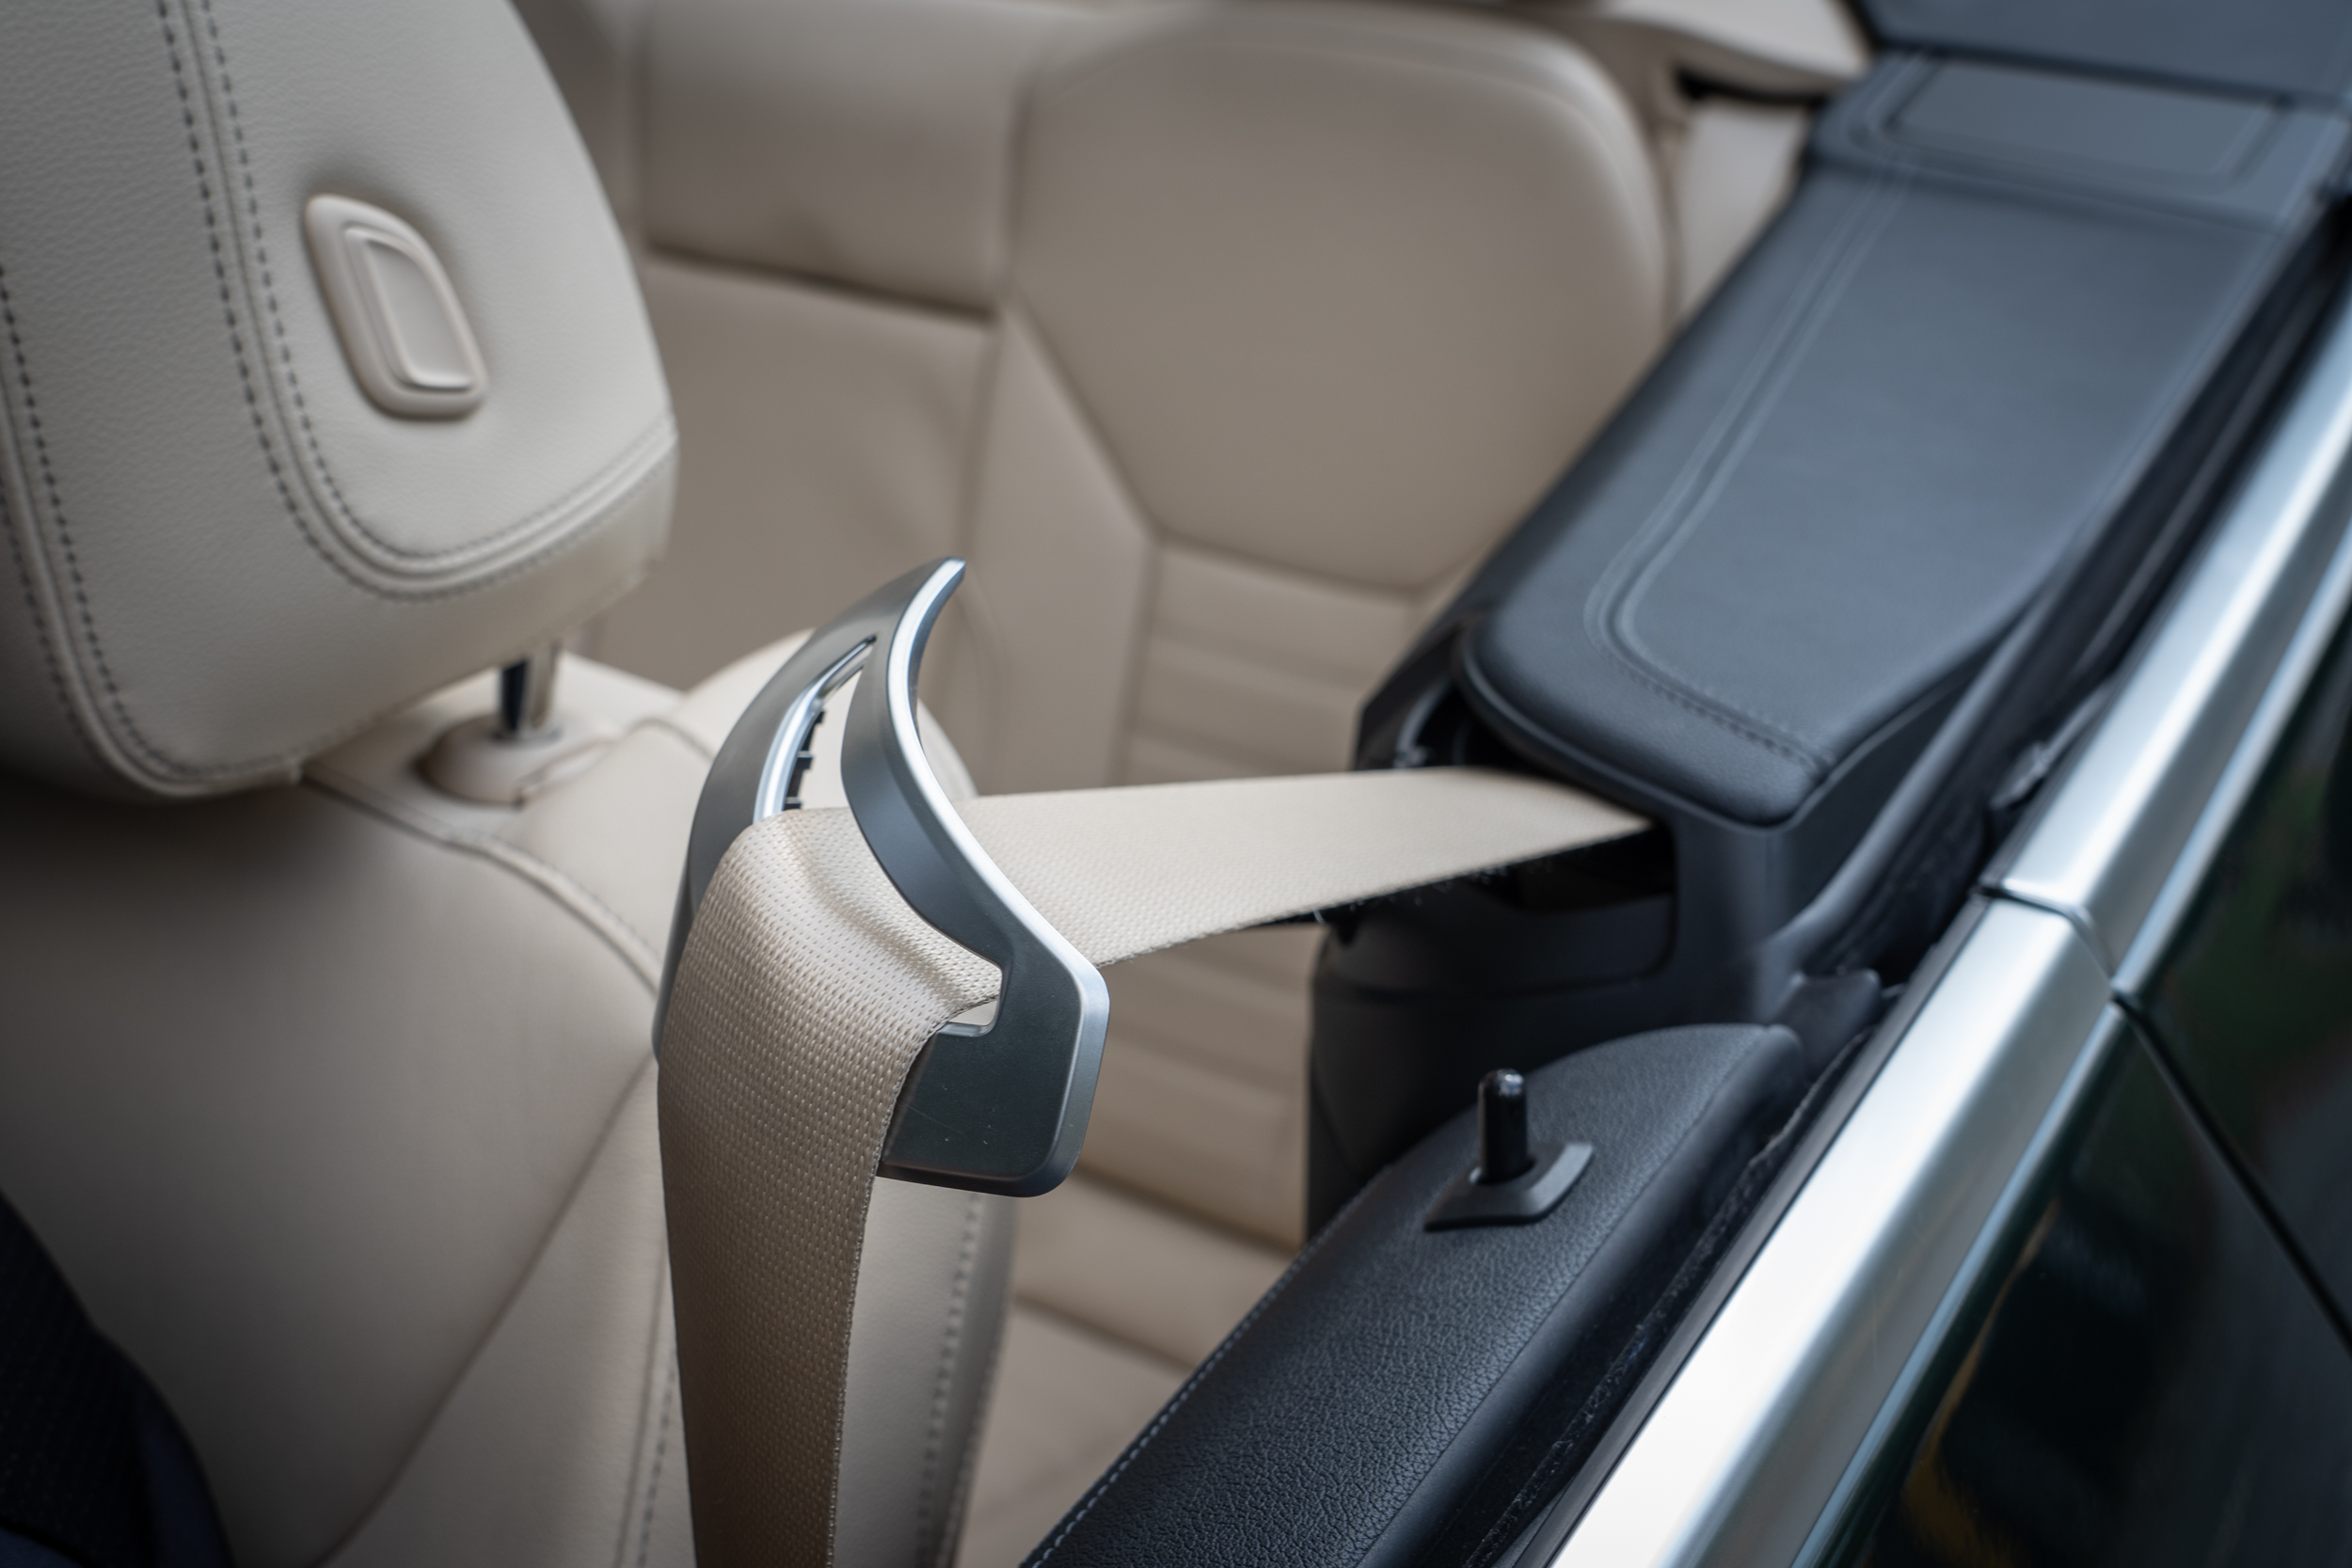 前座安全帶自動前推功能，讓上車繫安全帶動作更為輕鬆容易。